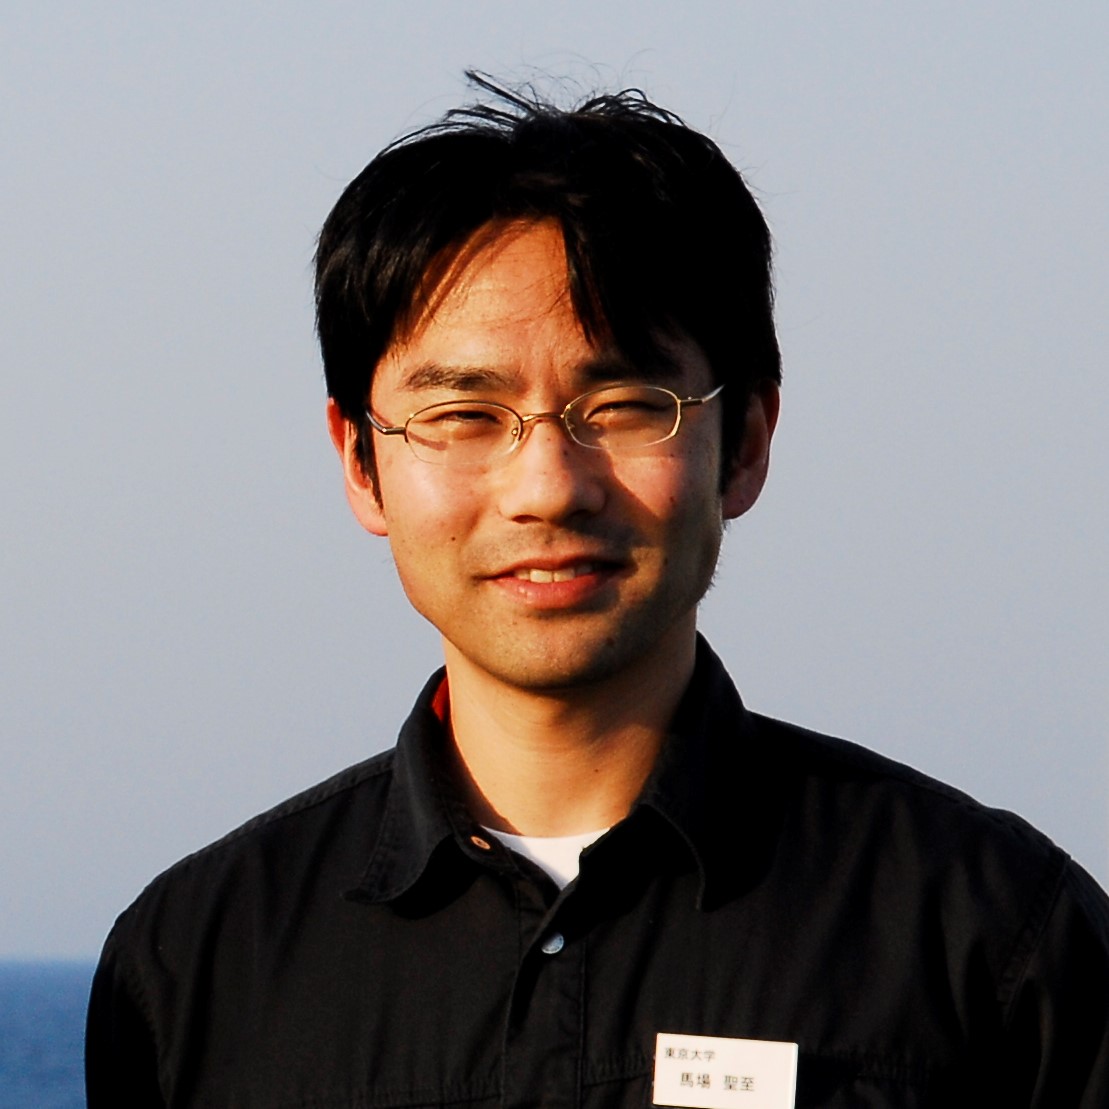 Kiyoshi Baba @ 北西太平洋 in 2007